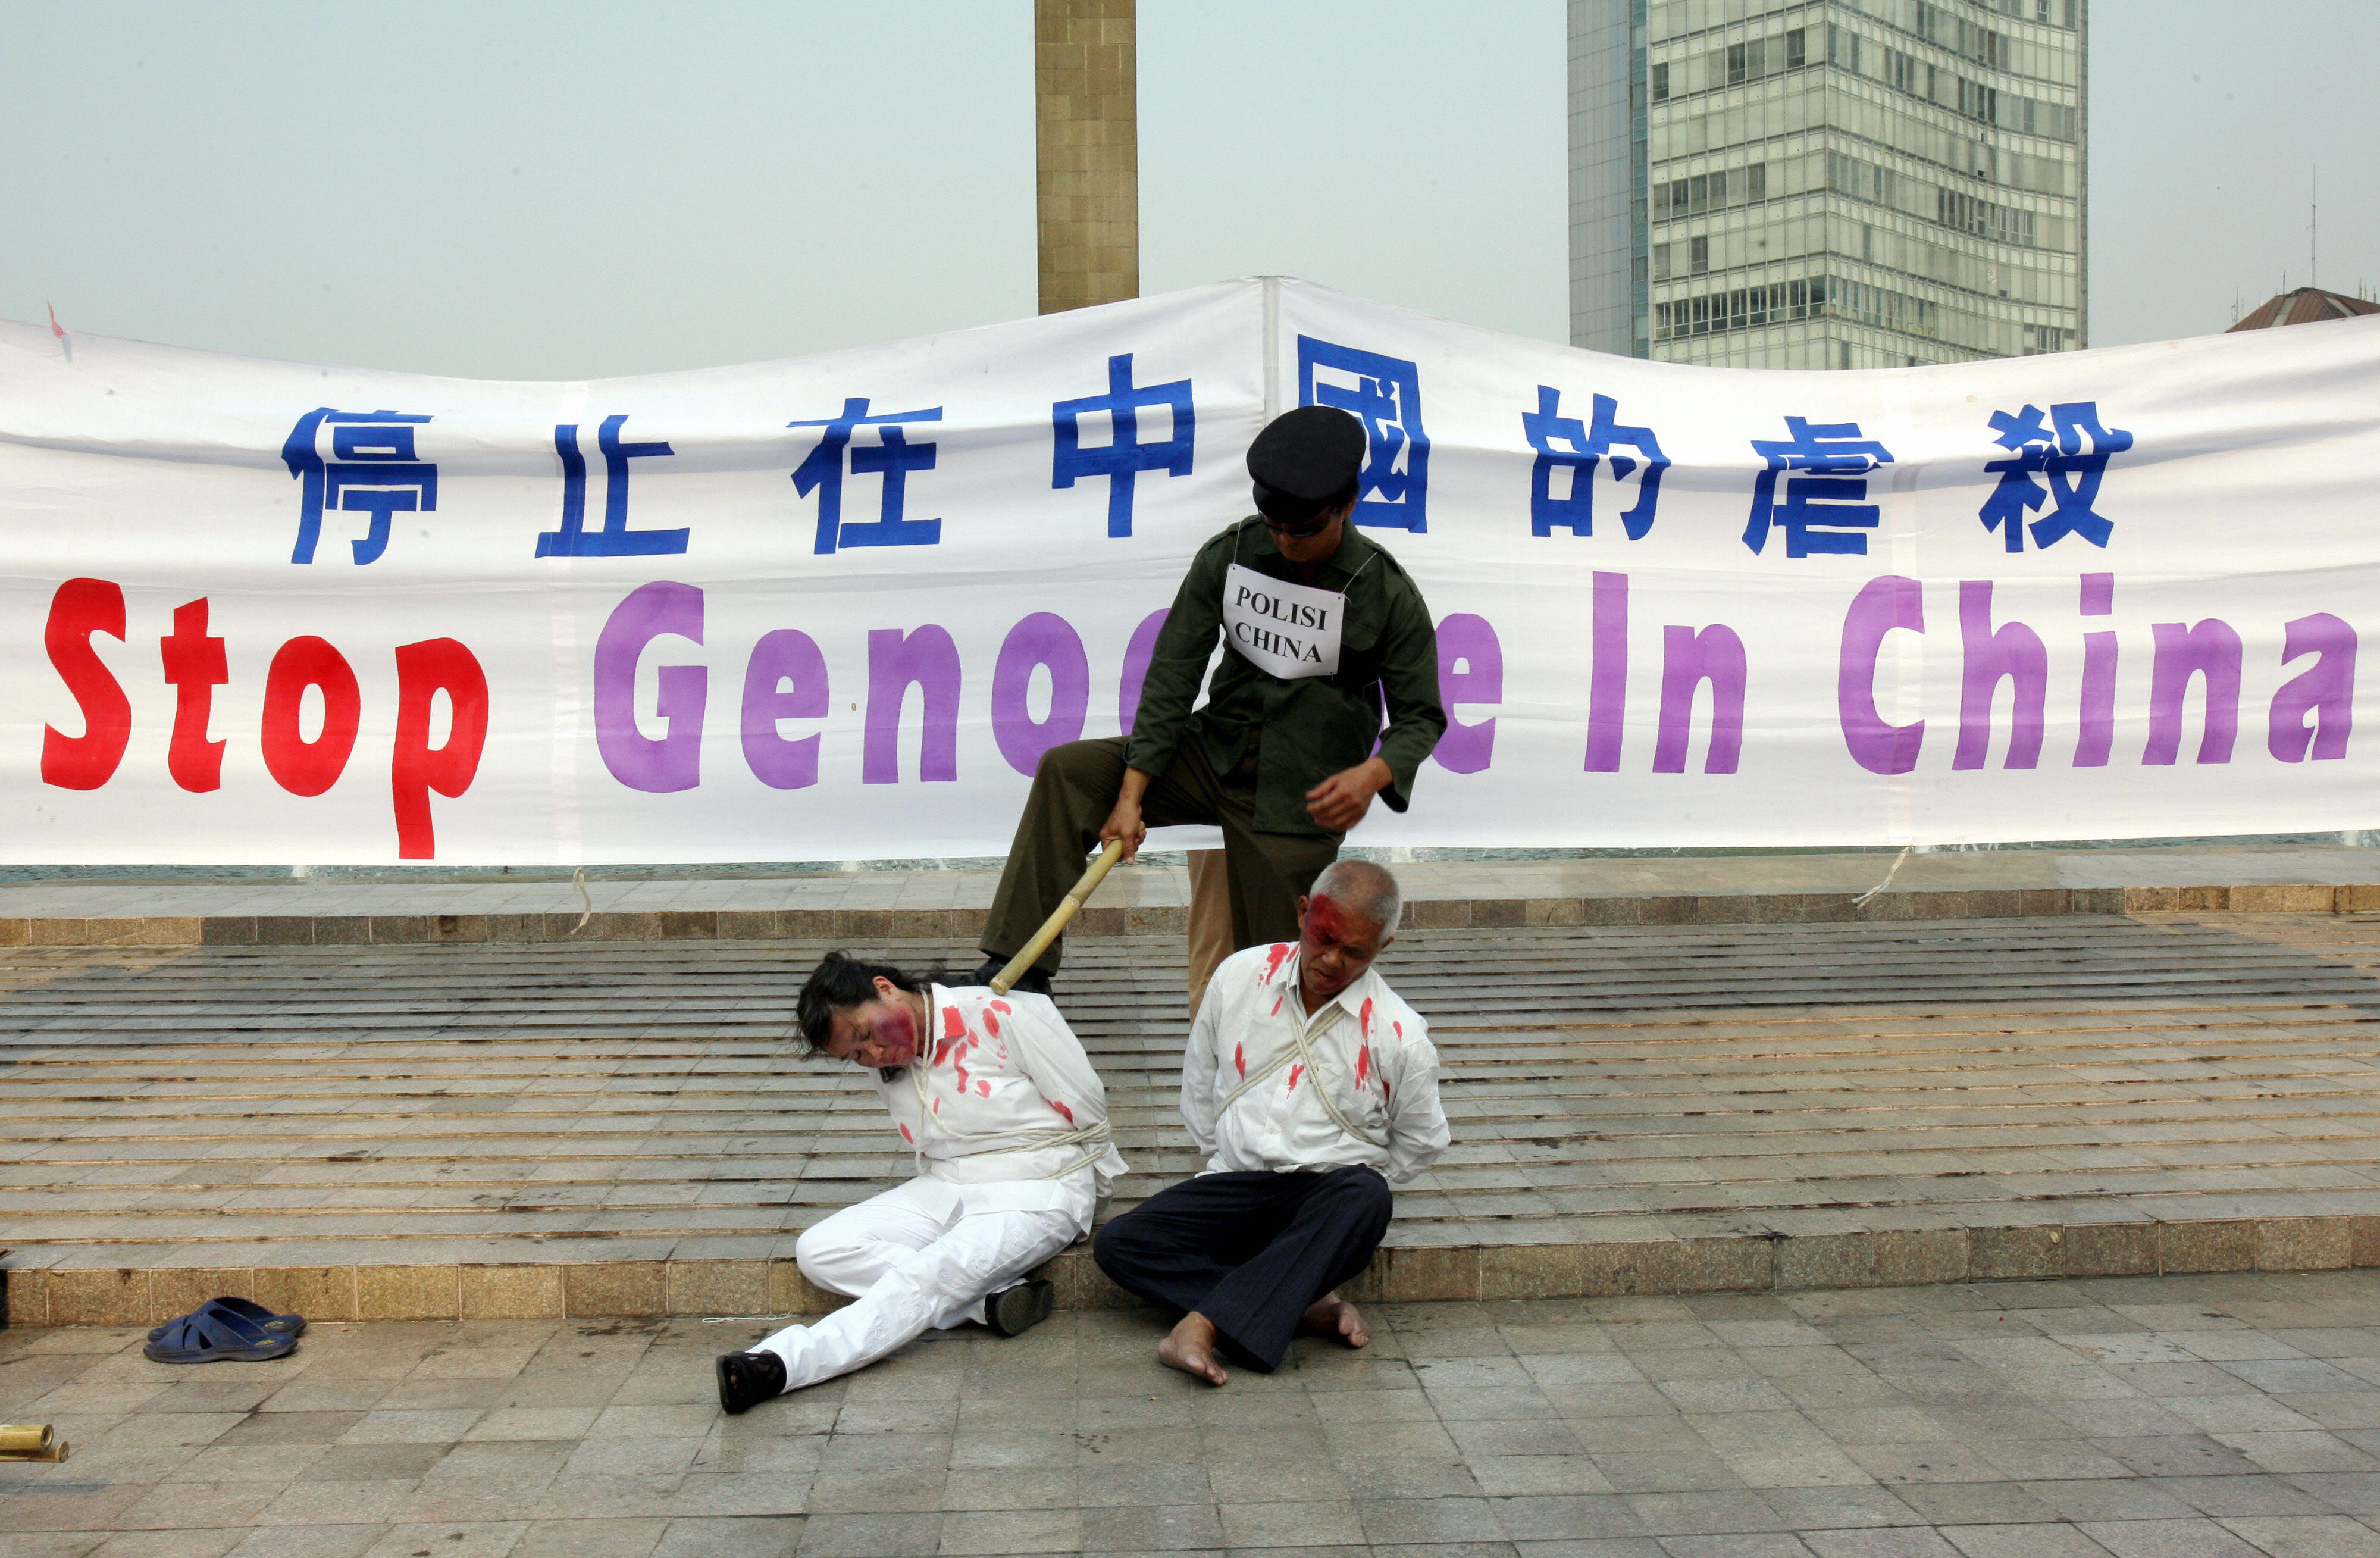 China: Intellektuelle denken über Unterstützung von Falun Gong nach